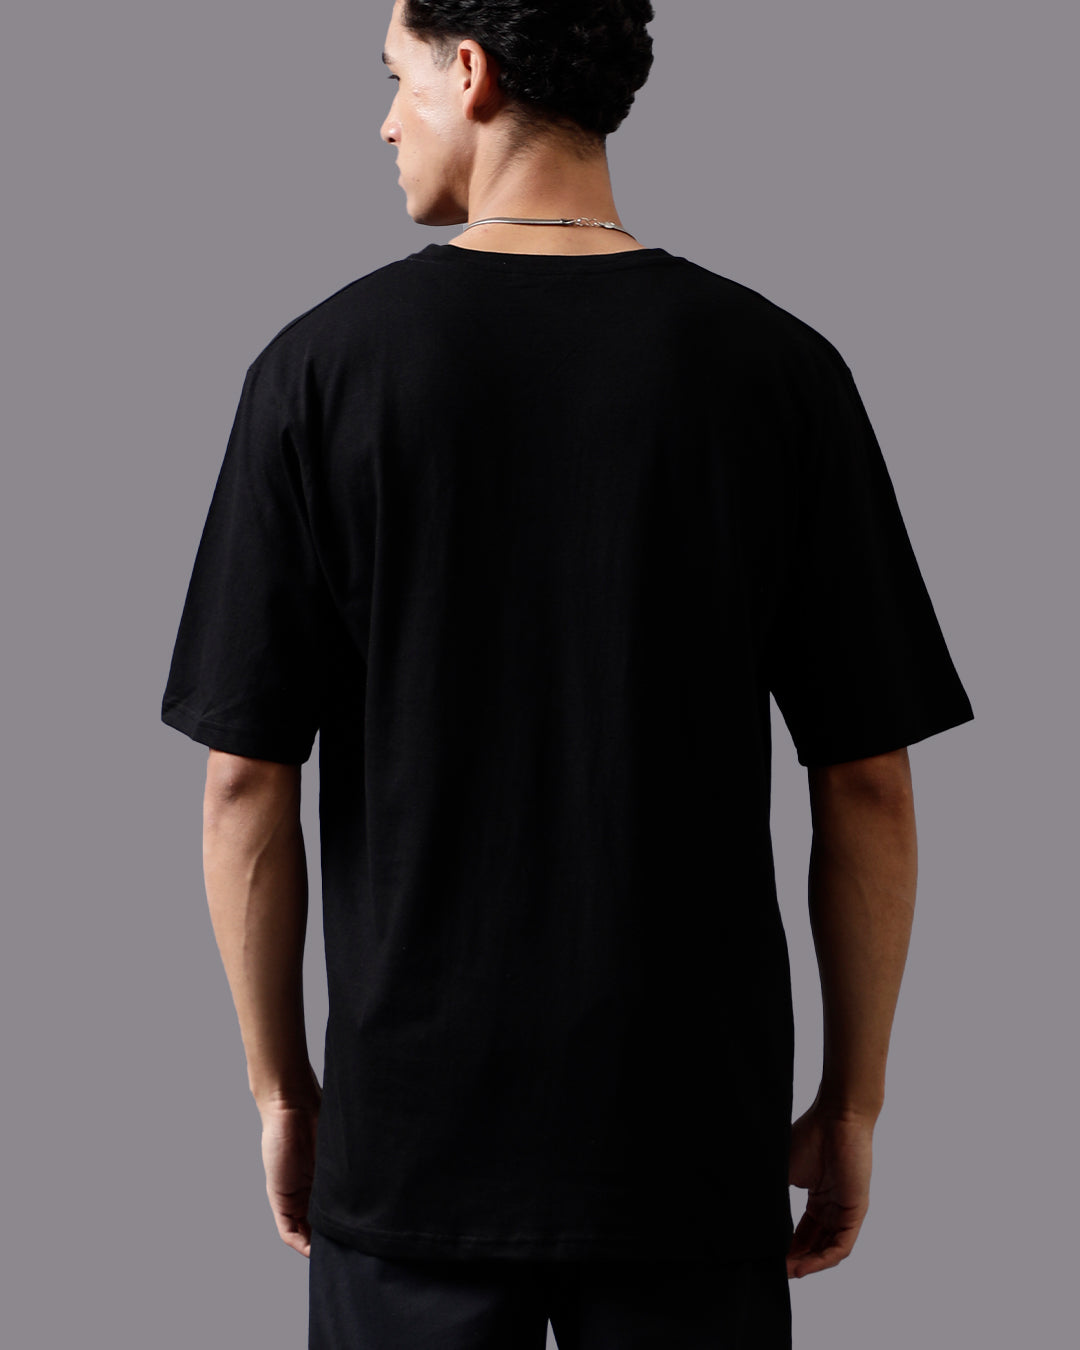 Combo Pack Of 2 | Black Oversized T-shirt + Black Cargo